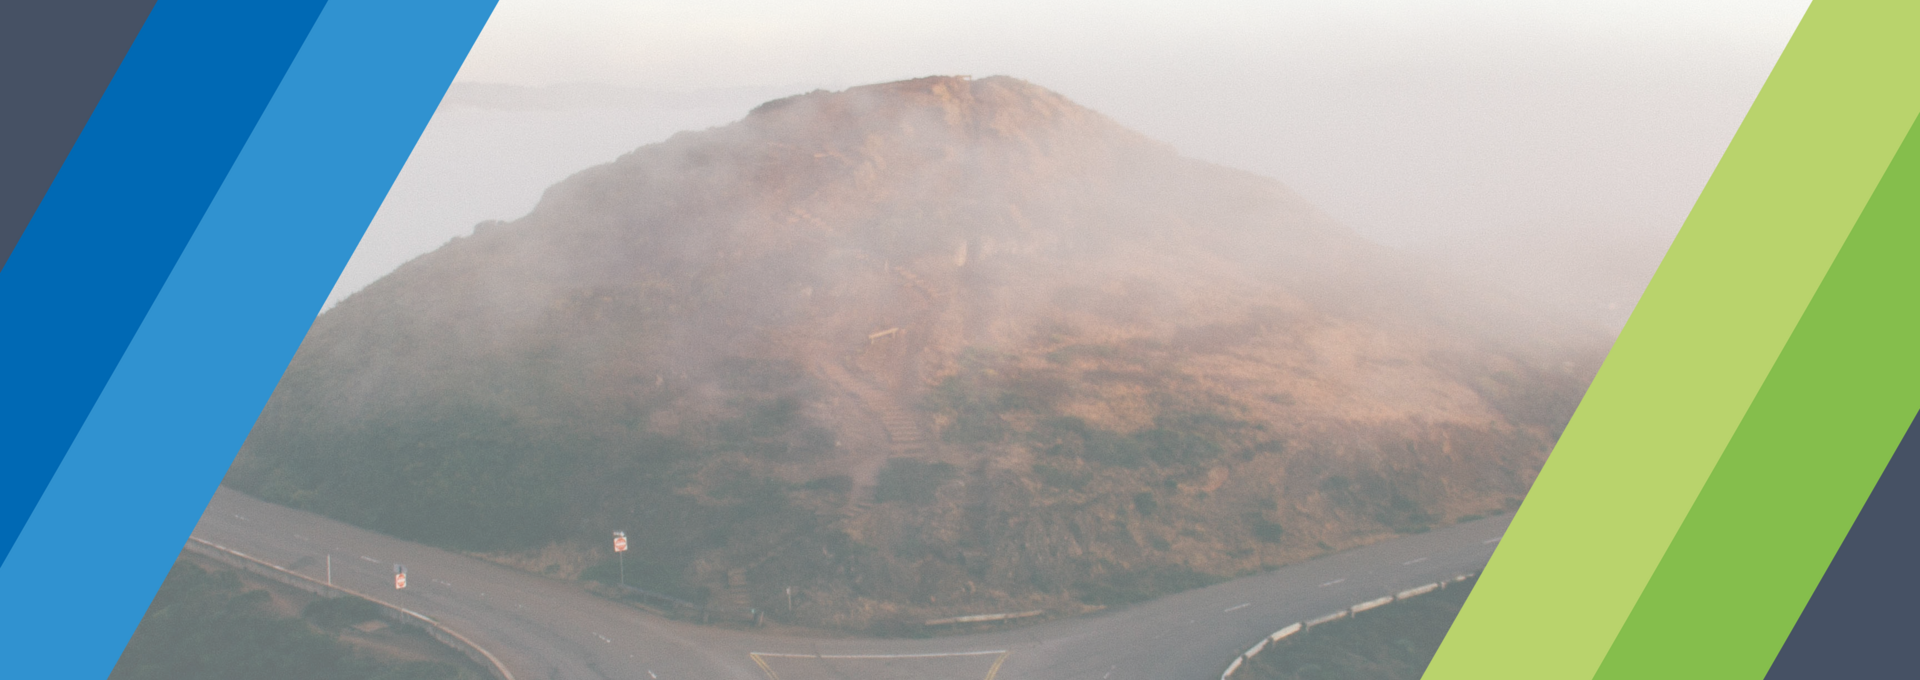 Bild eines Berges im Nebel mit zwei Wegen drumherum. An beiden Rändern sind schräge, farbige Balken.